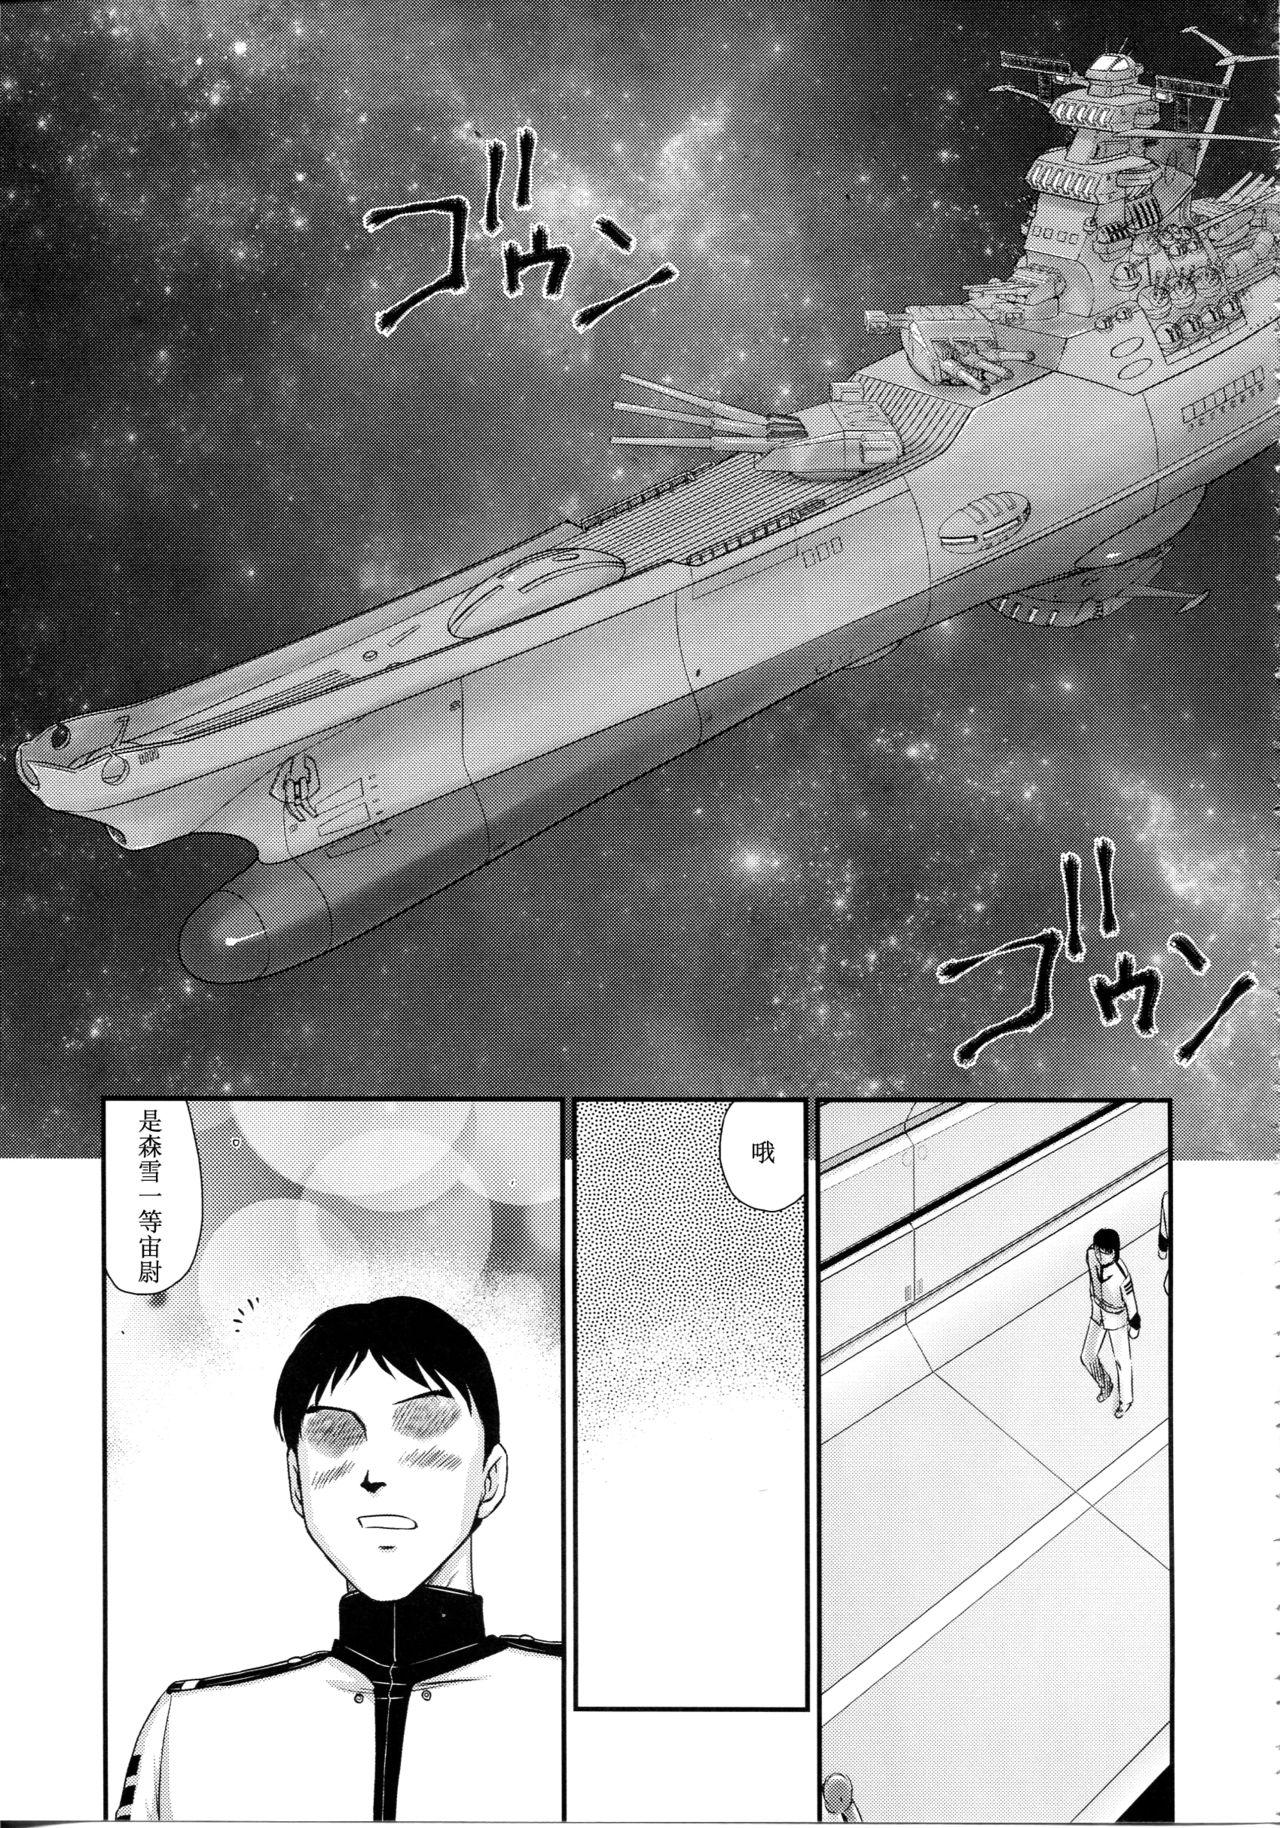 Cumswallow Yuki no Shizuku - Space battleship yamato 2199 Mojada - Page 10